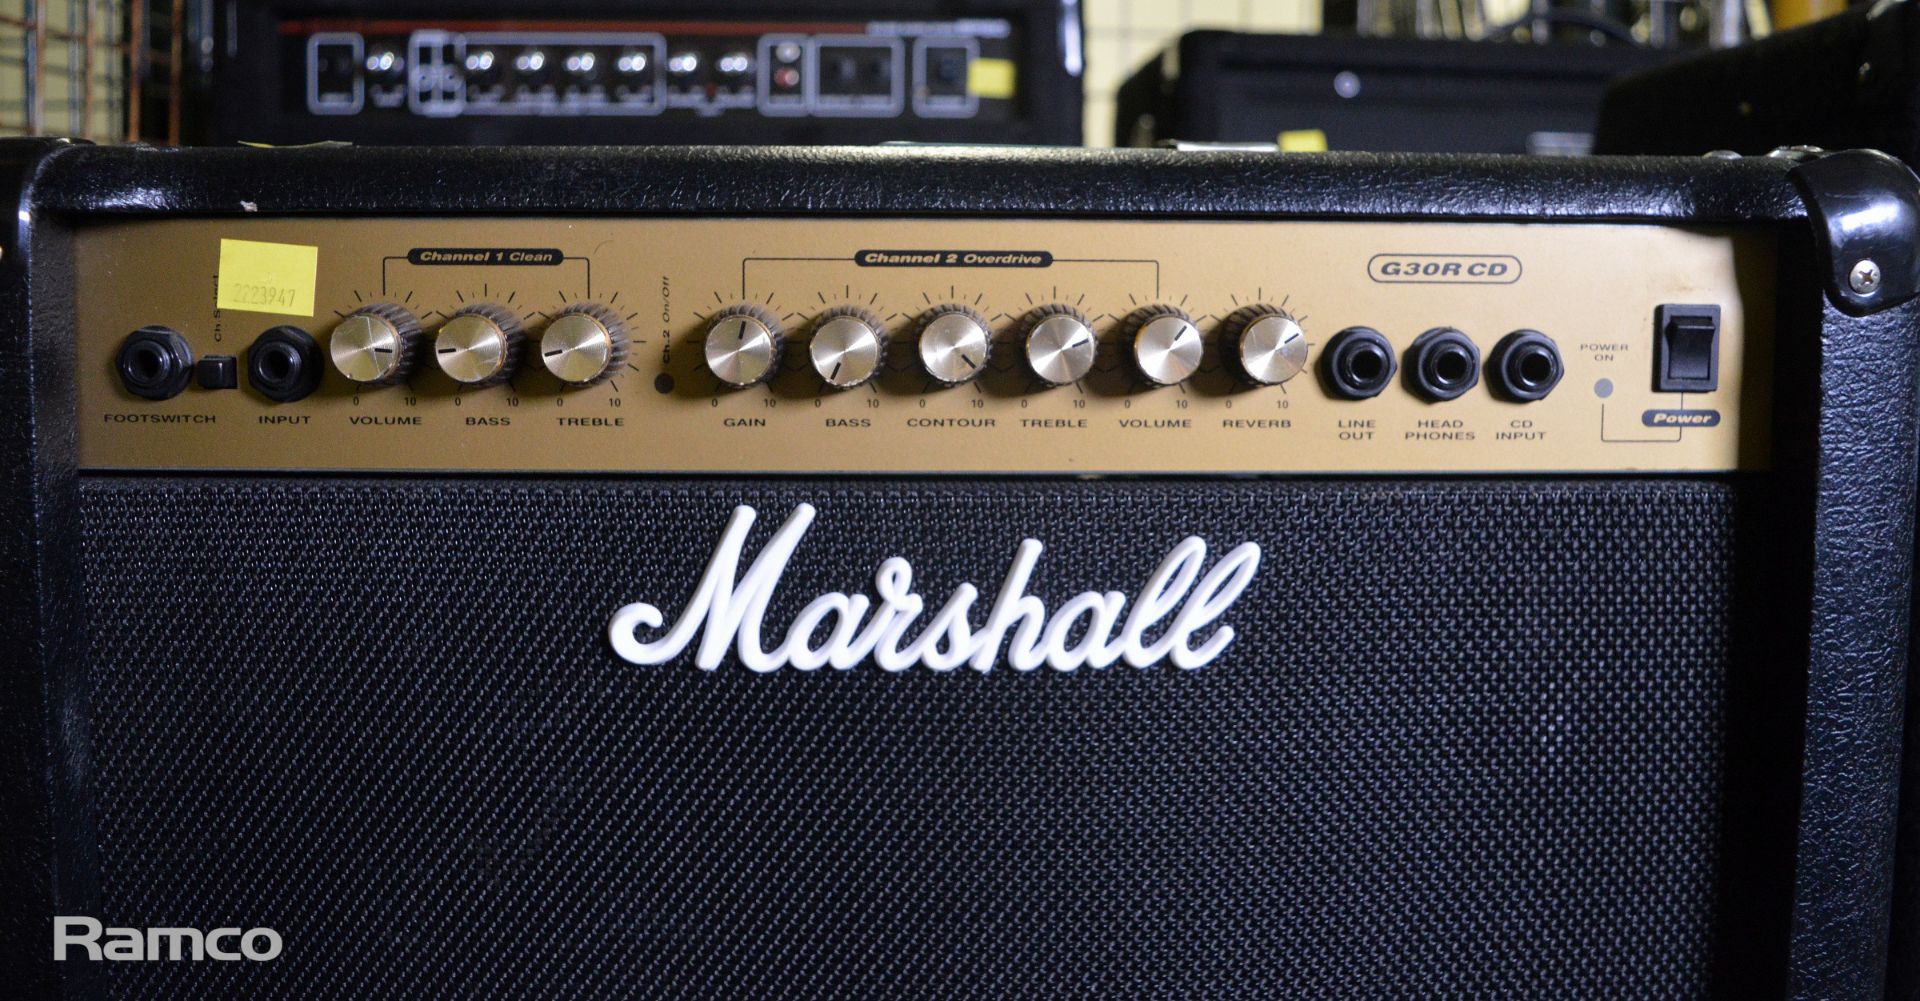 Marshall G30R CD 80 Watt Guitar Amplifier - Image 2 of 5